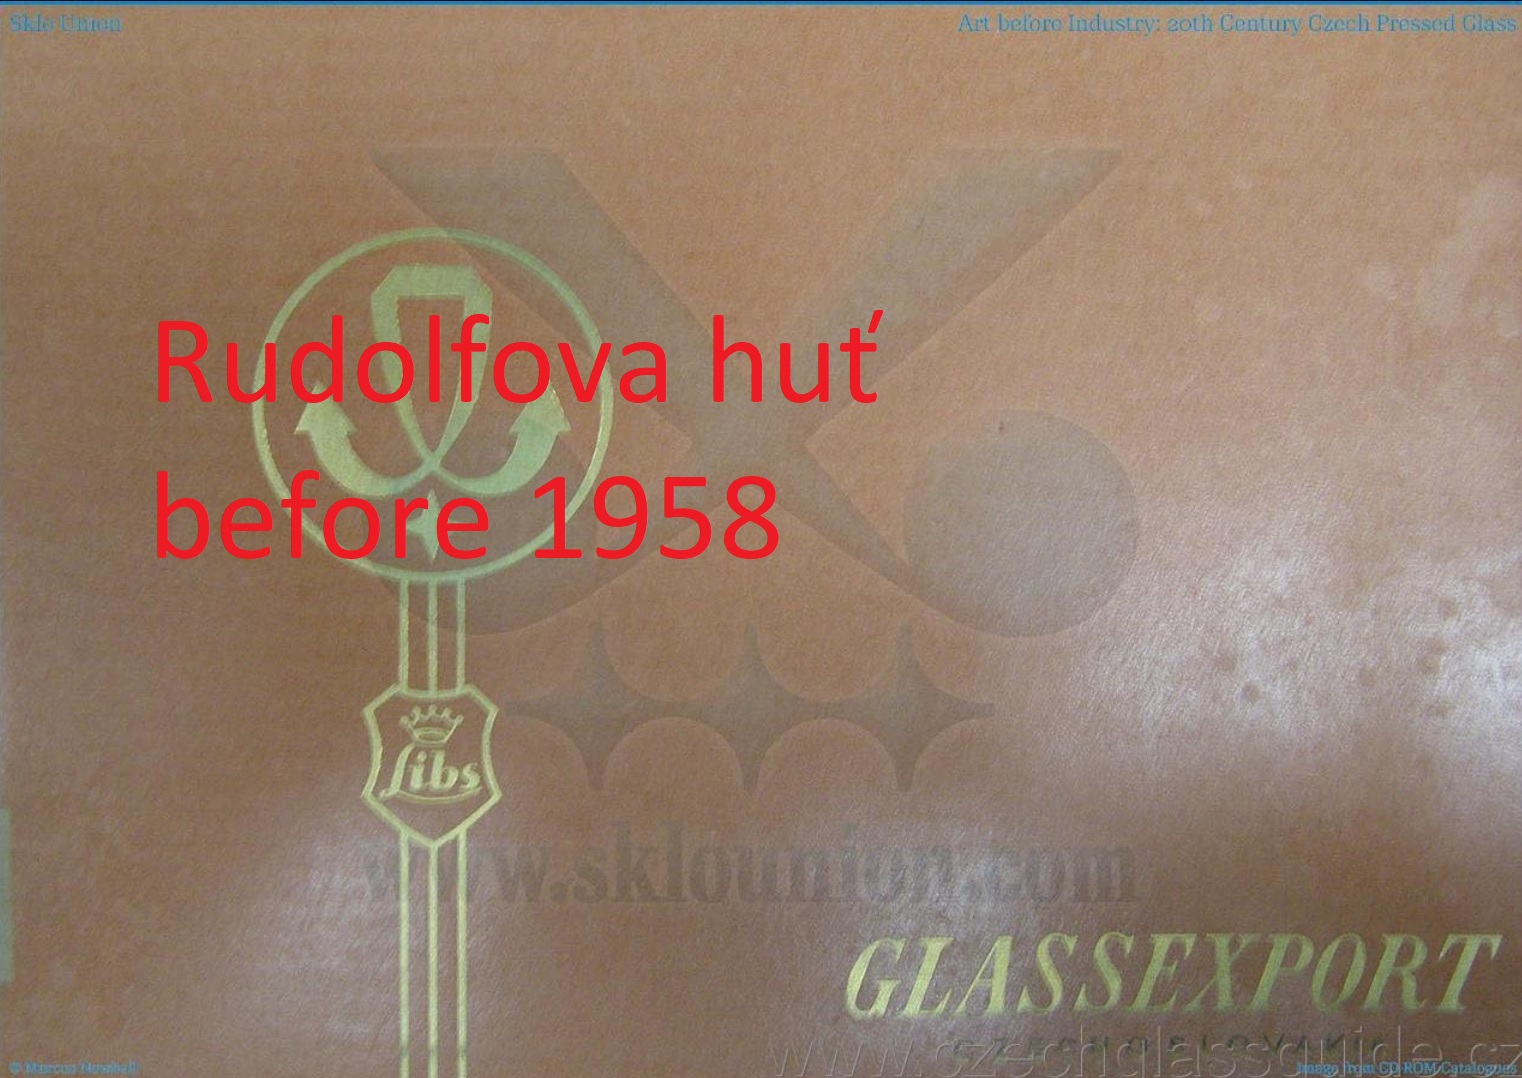 Rudolfova huť - Glassexport before 1958